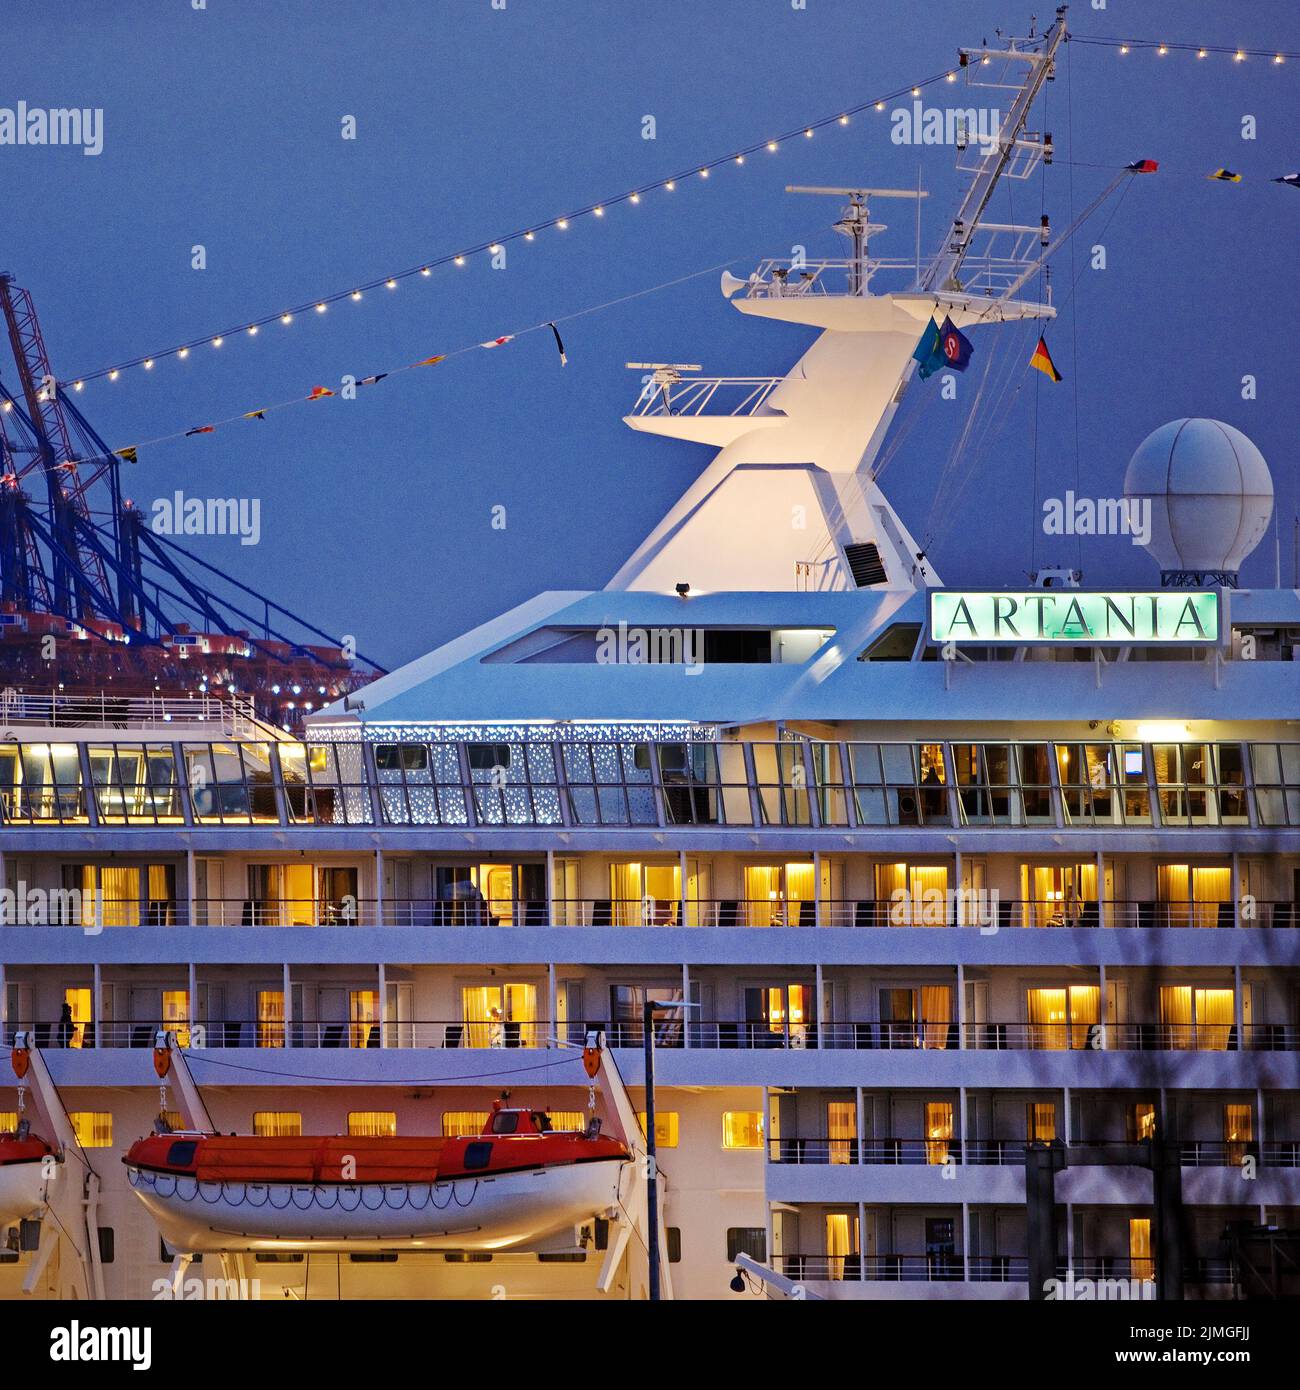 Bateau de croisière Artania au Hamburg Cruise Centre Altona, Hambourg, Allemagne, Europe Banque D'Images